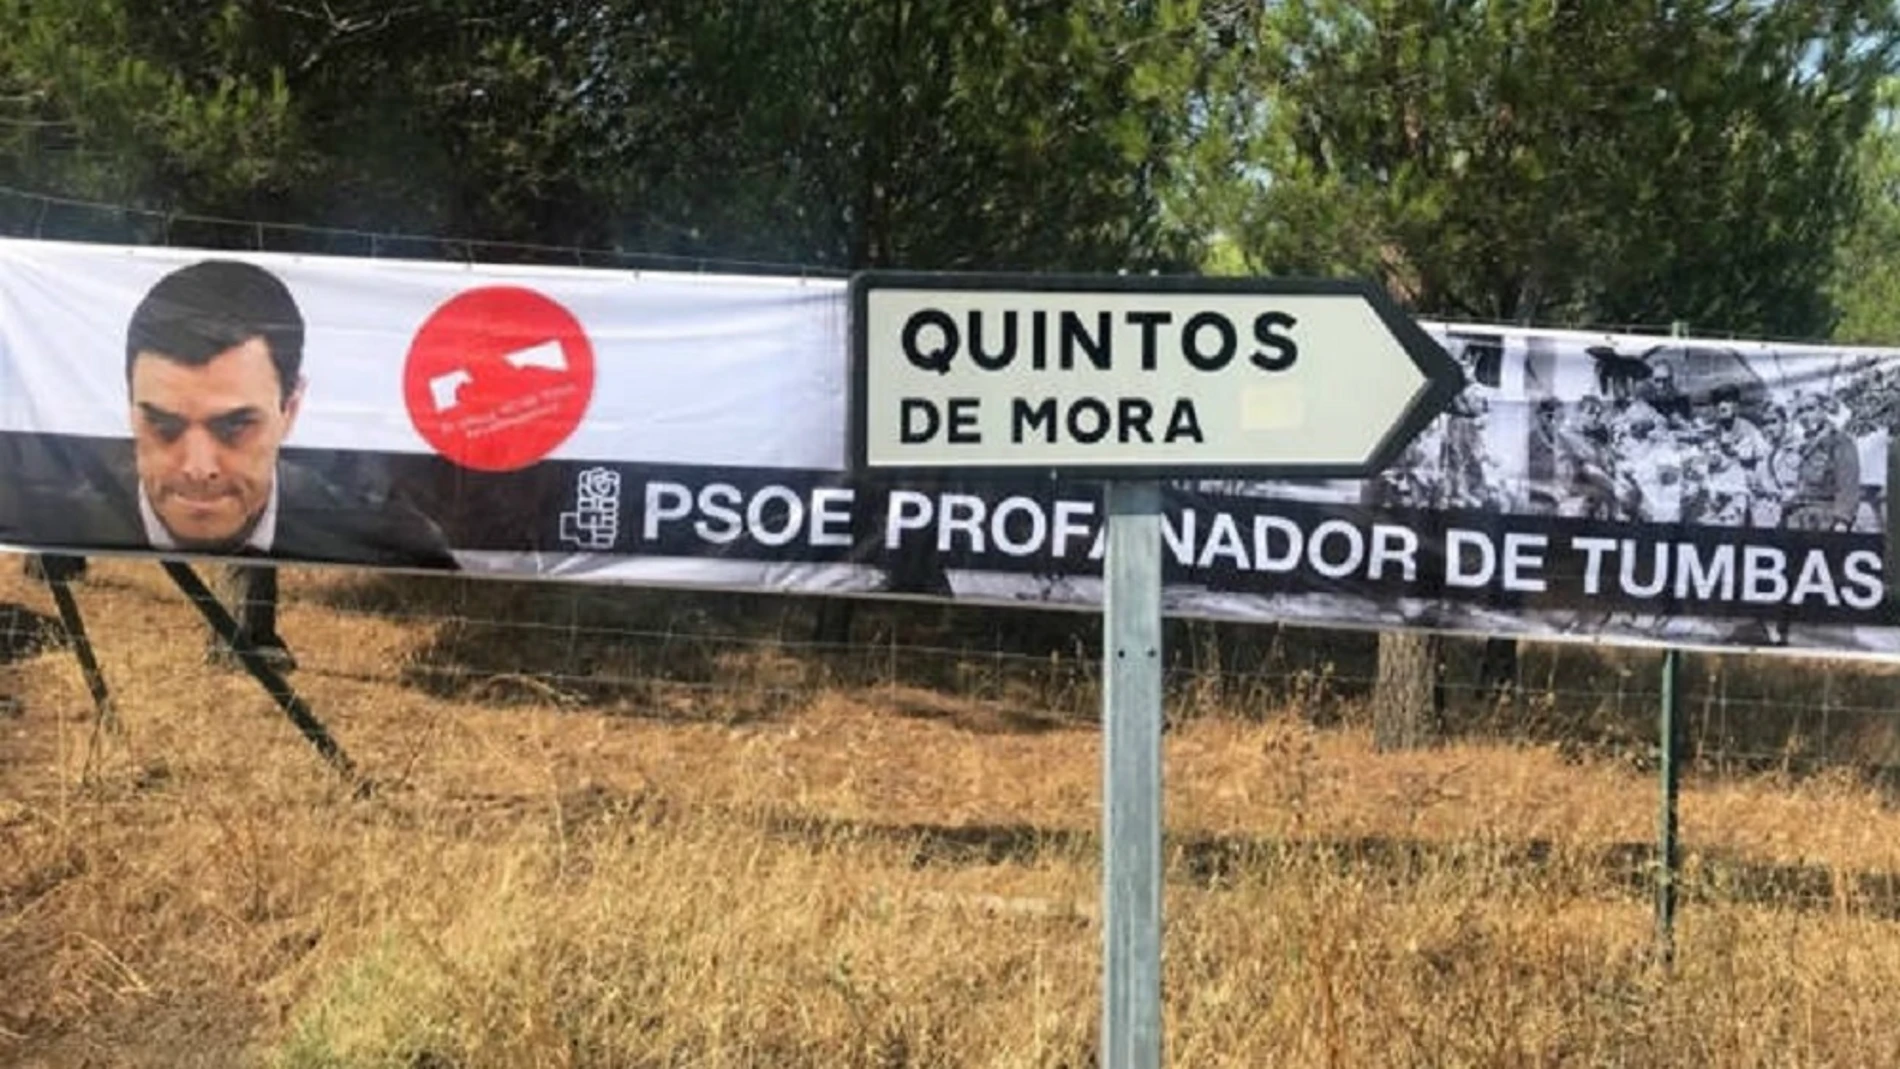 Imagen de la pancarta que han colocado donde se lee: "PSOE profanador de tumbas"